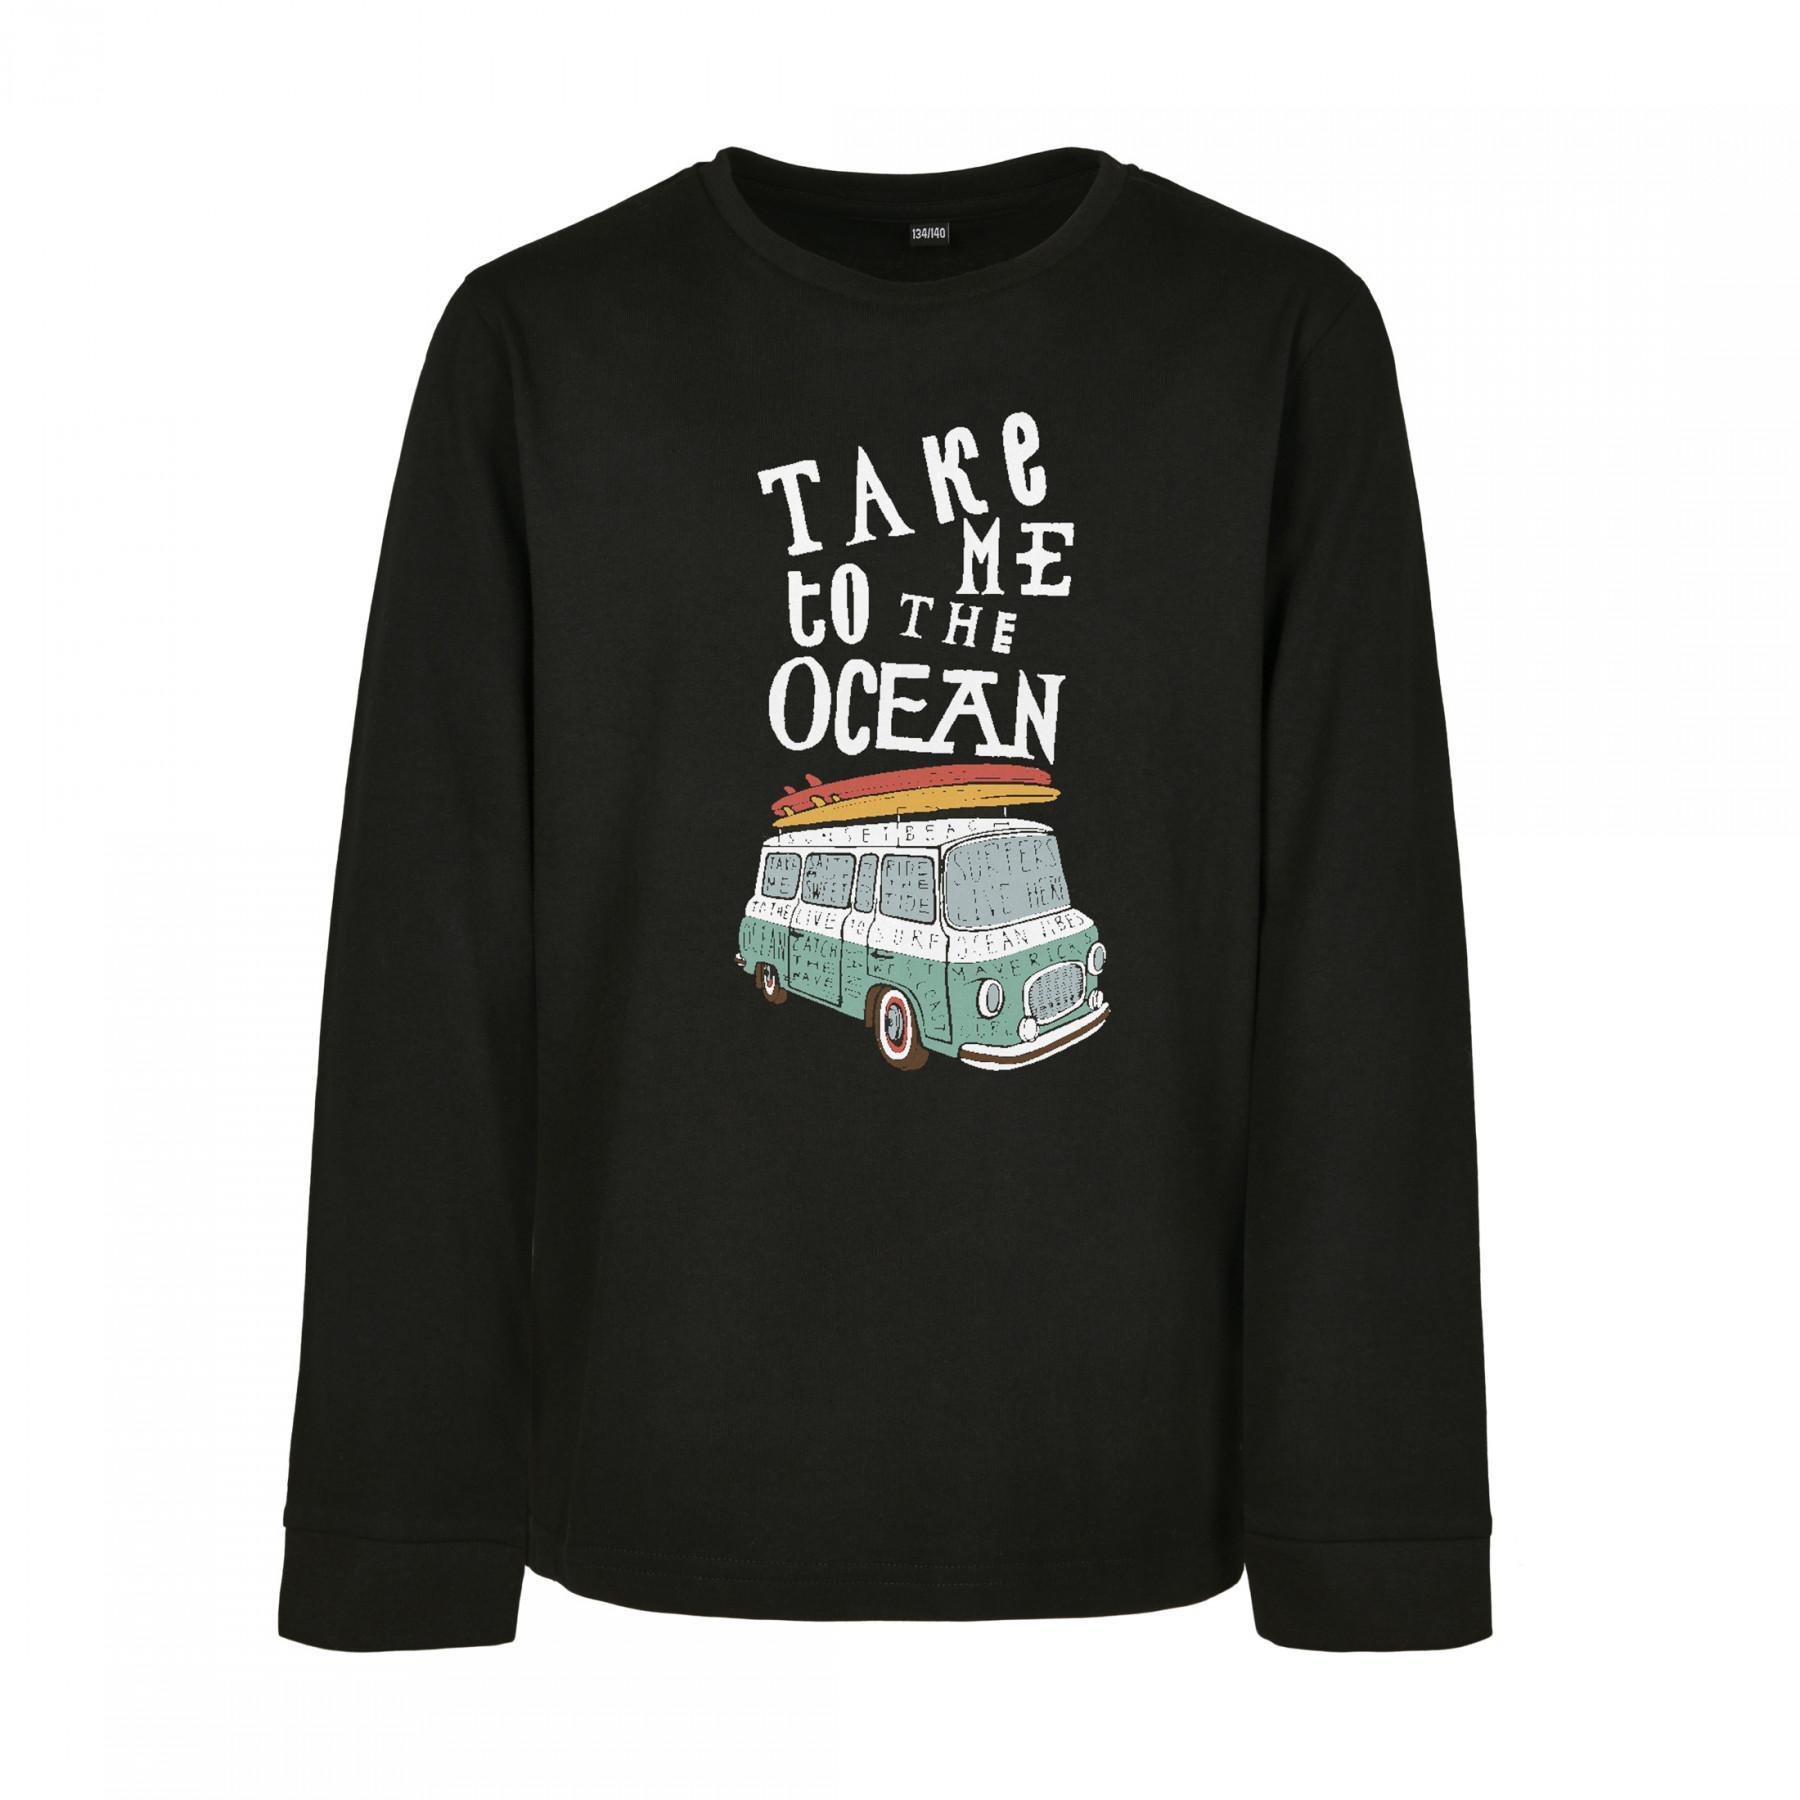 Kinder sweatshirt Mister Tee kids take me to the ocean